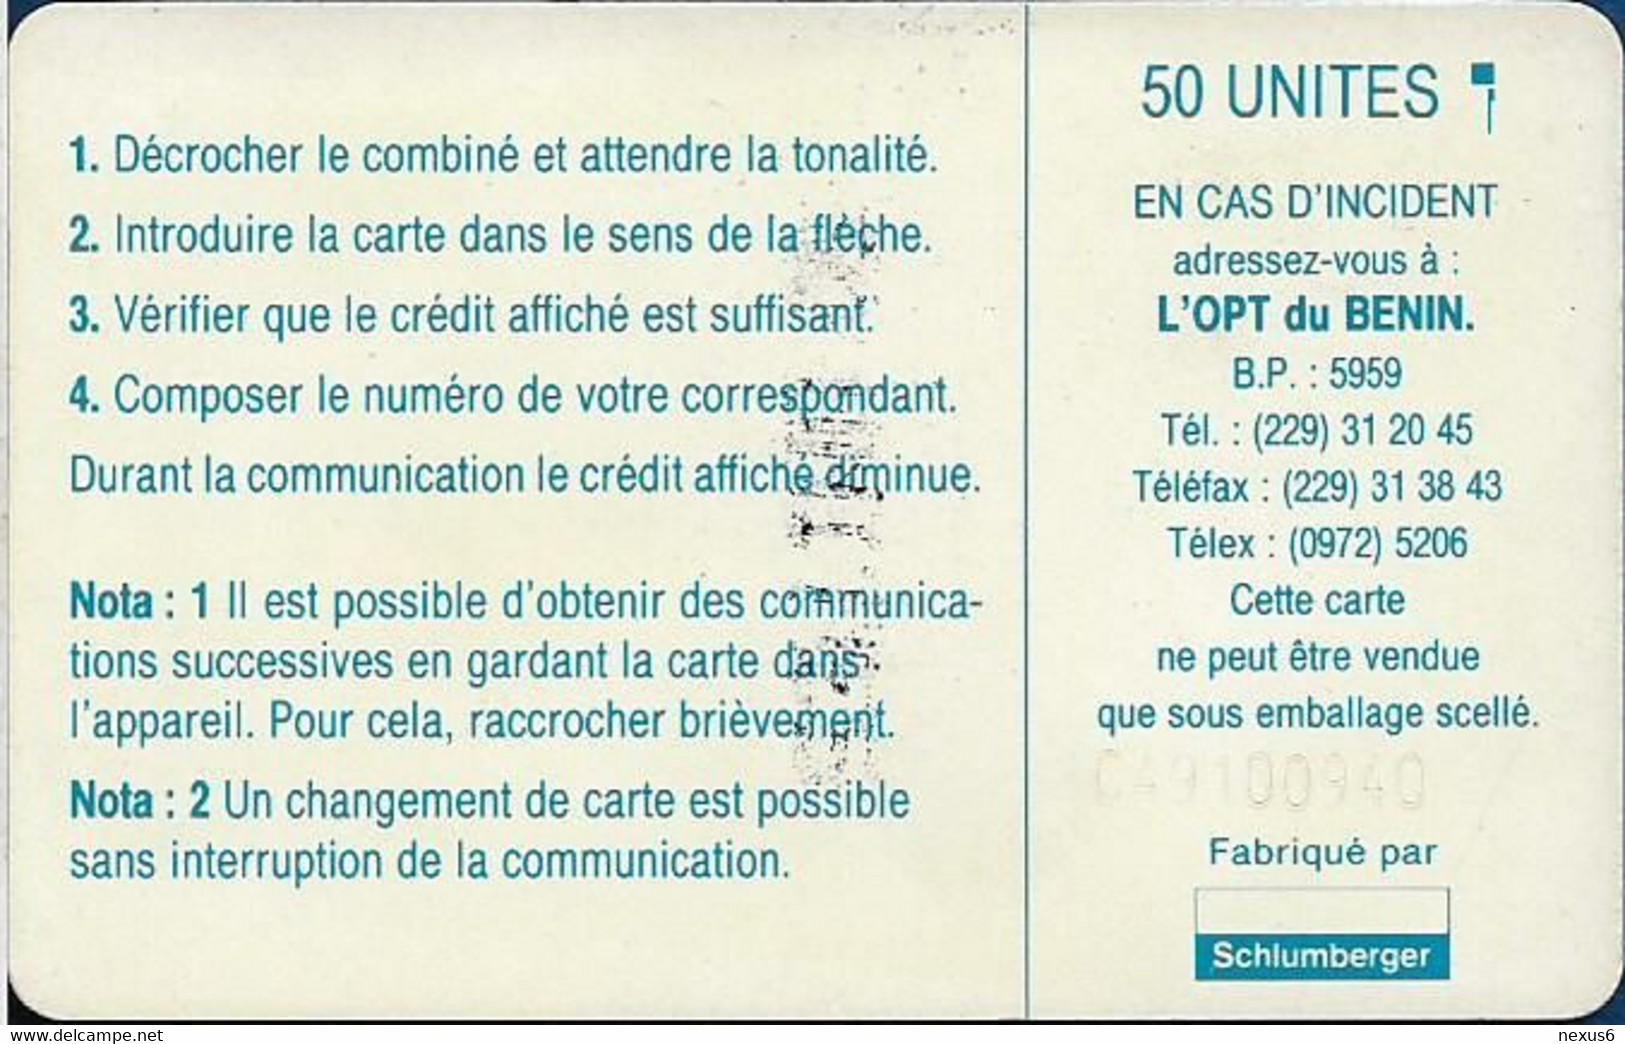 Benin - PTT (Chip) - Logo 50, Chip SC5 Afnor, Cn. C49100940 White, 50Units, Used - Bénin